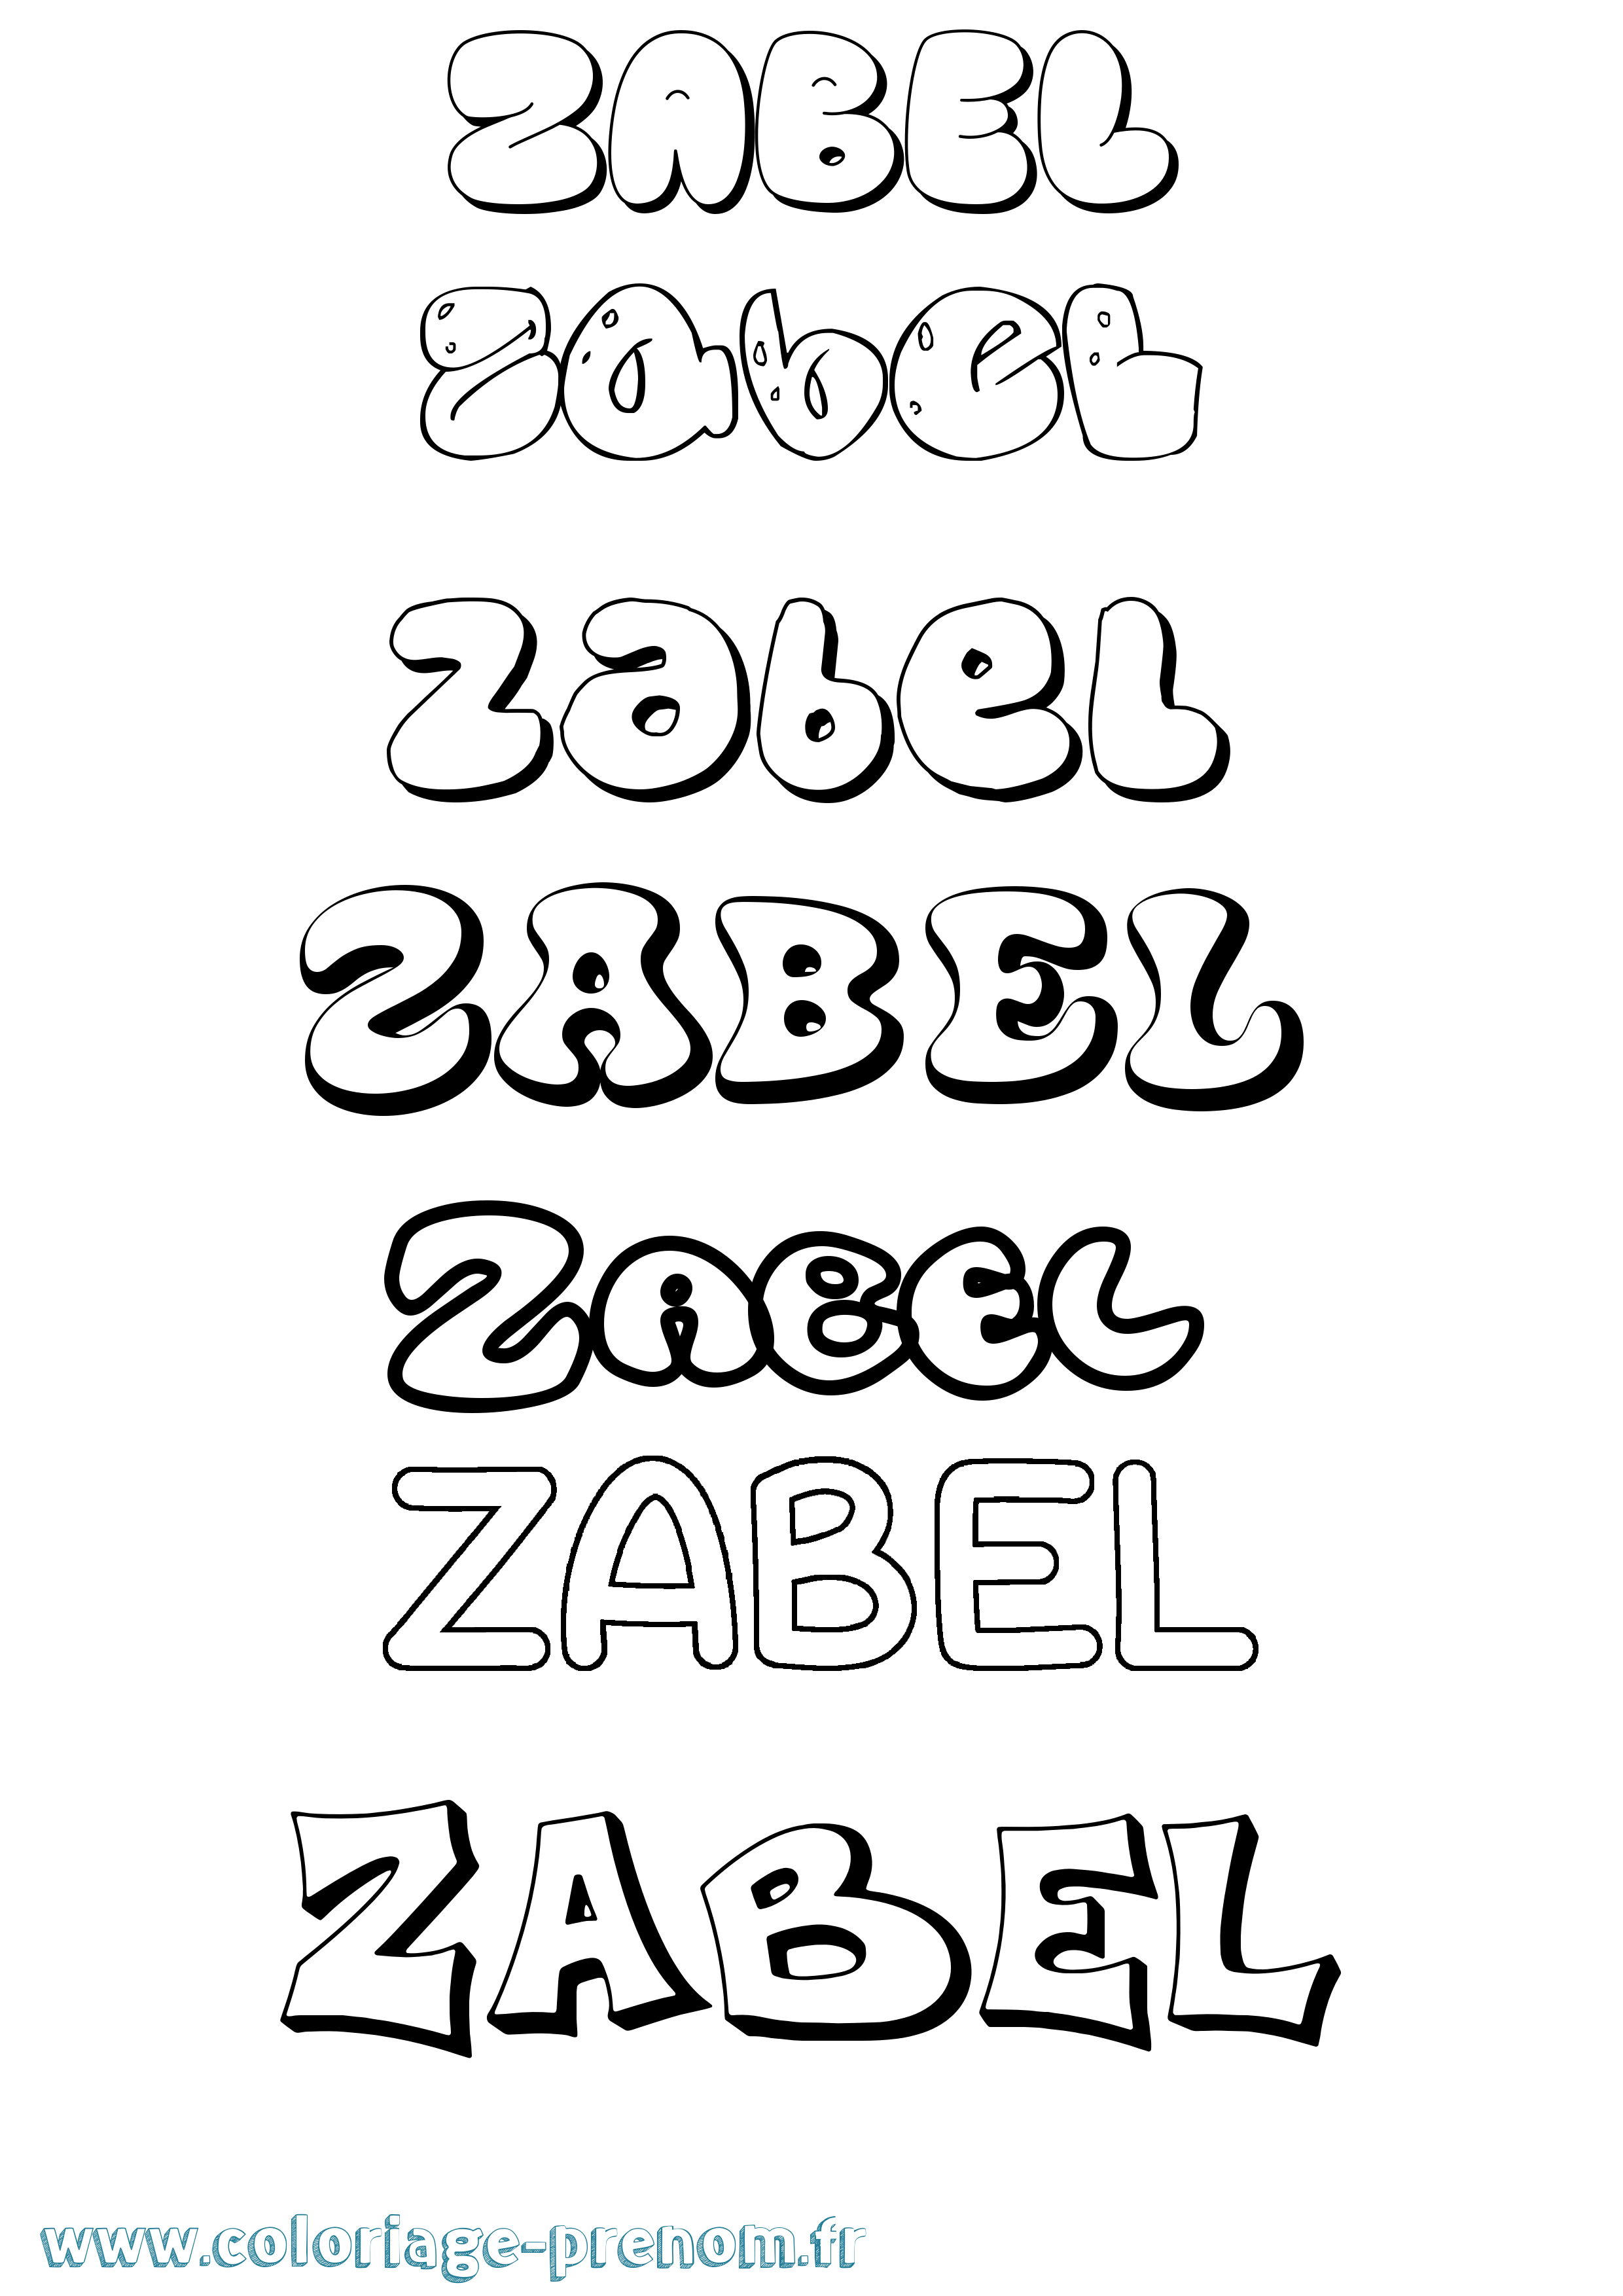 Coloriage prénom Zabel Bubble